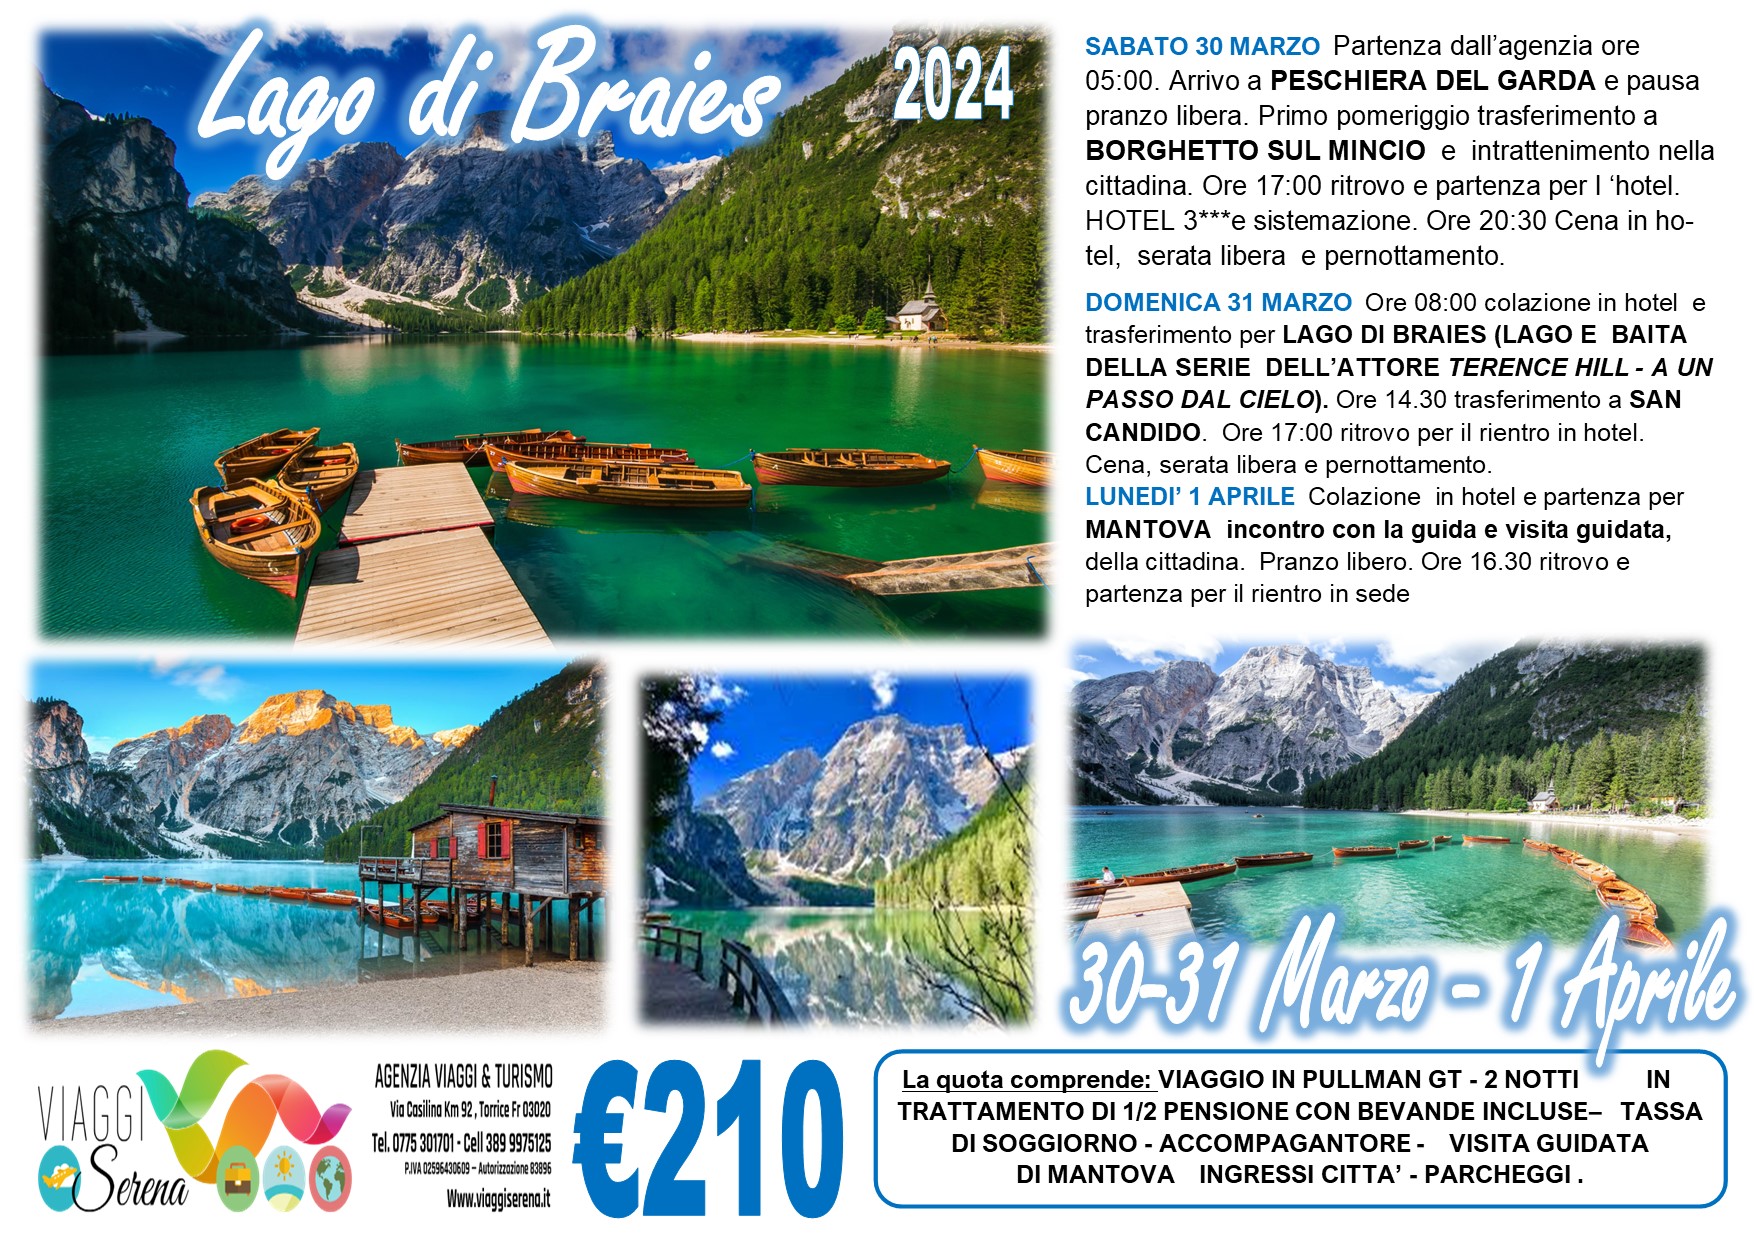 Viaggi di gruppo: Pasqua Lago di Braies, San Candido, Mantova & Borghetto sul Mincio 30-31 Marzo 1 Aprile €210